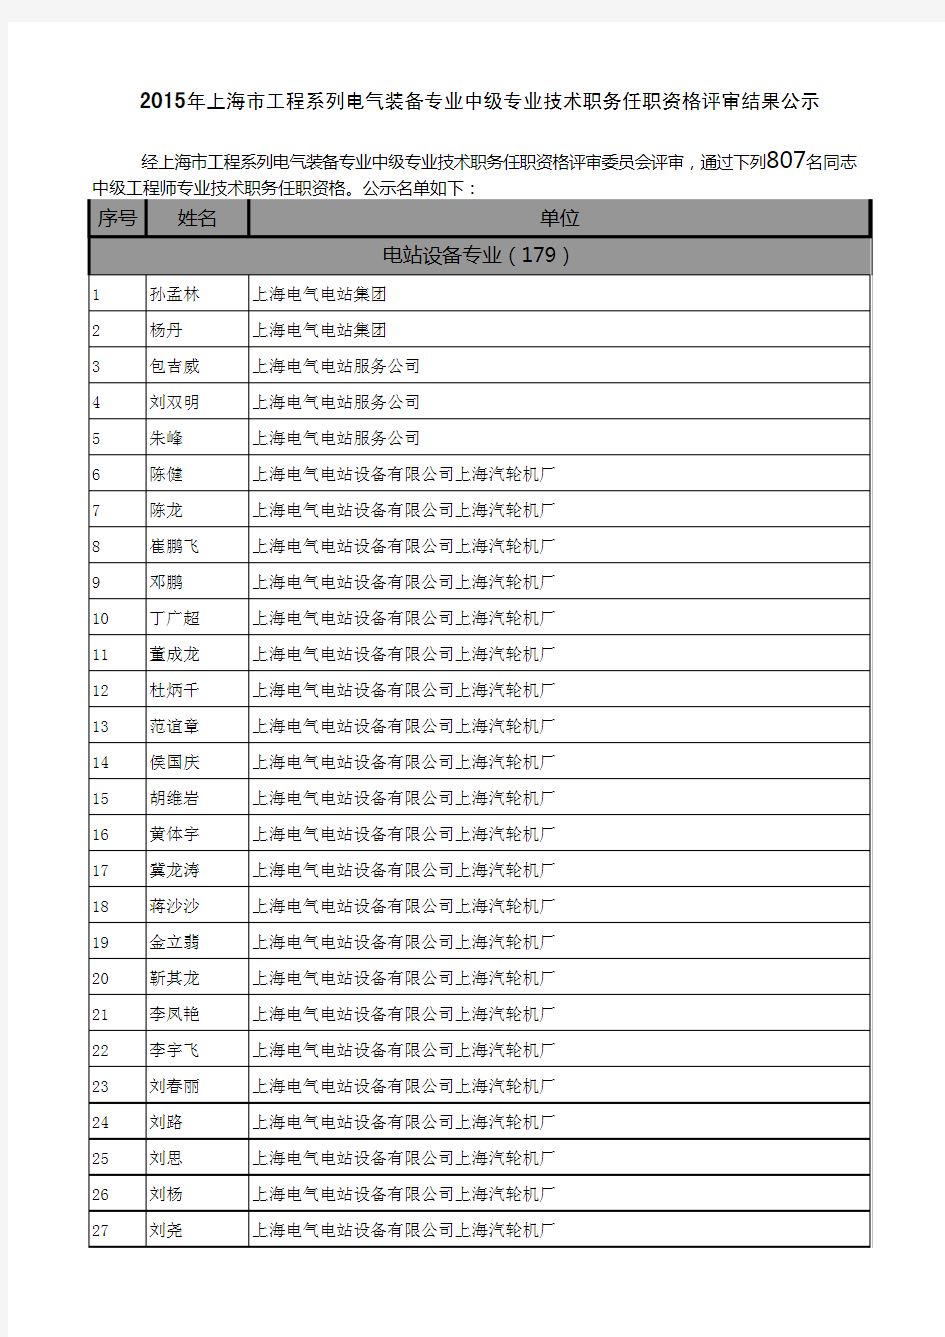 2015年上海市工程系列电气装备中级职称评审合格人员名单公示